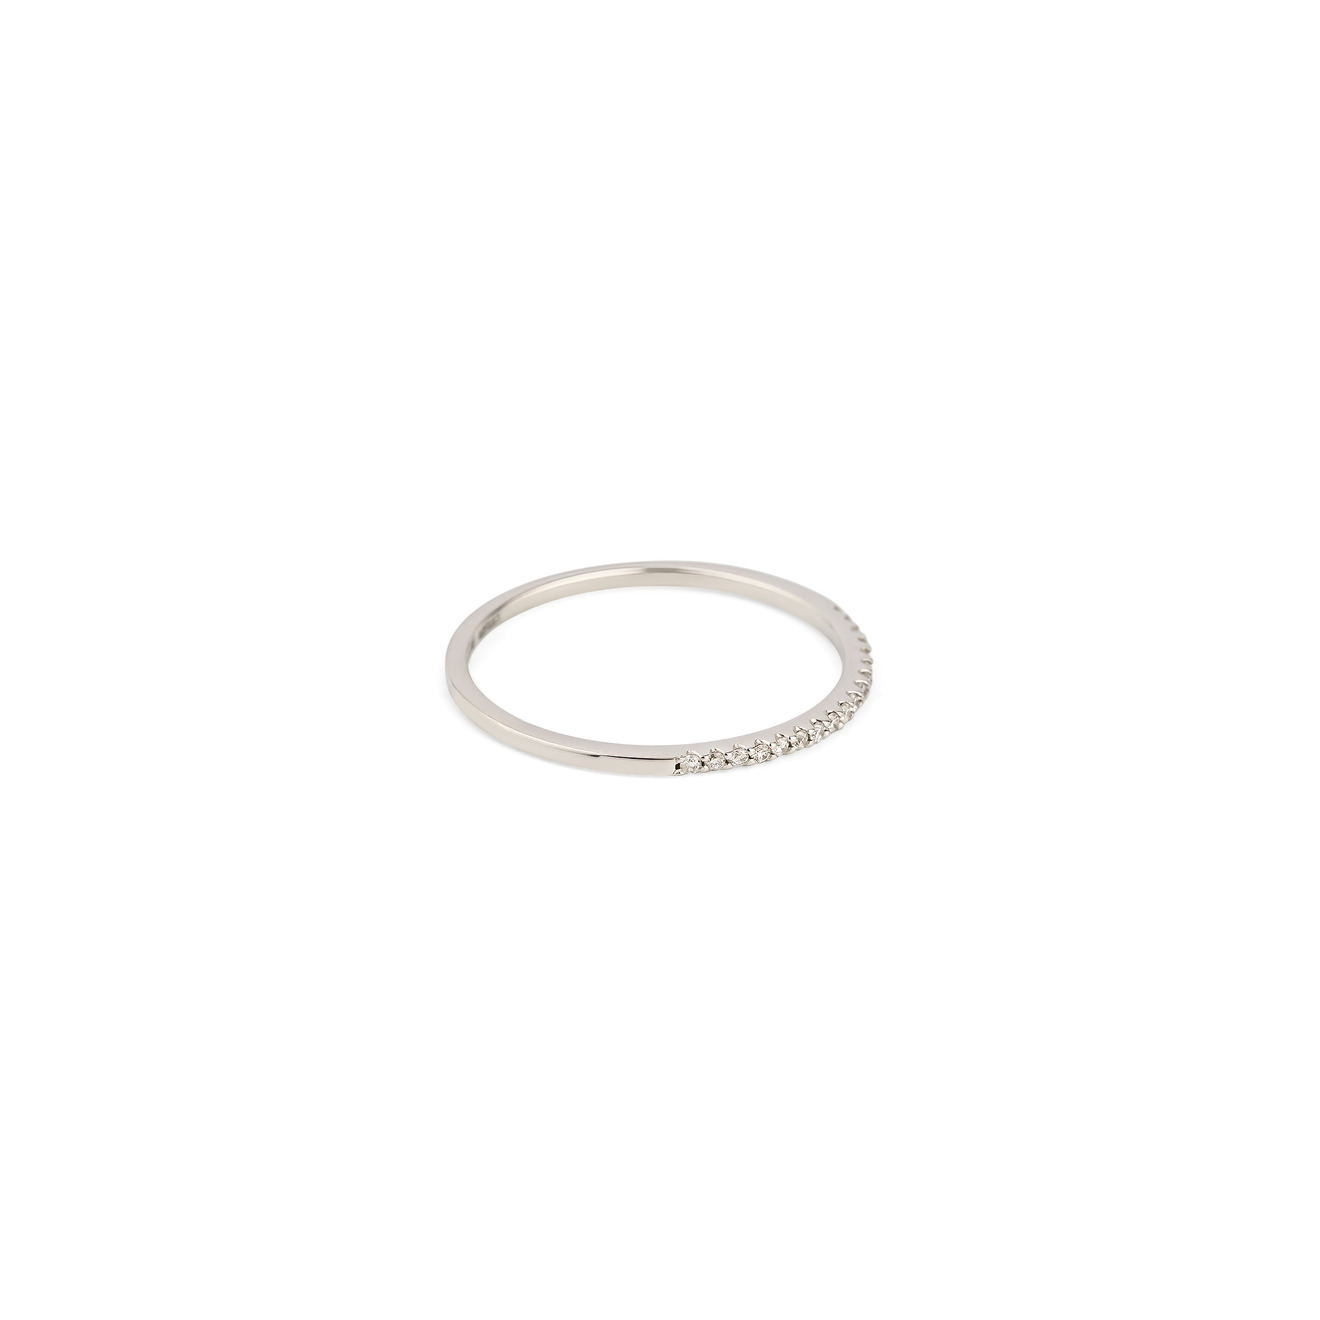 Moonka Кольцо-дорожка из золота с бриллиантами moonka золотое кольцо дуга с опалом и бриллиантами из коллекции opalescence